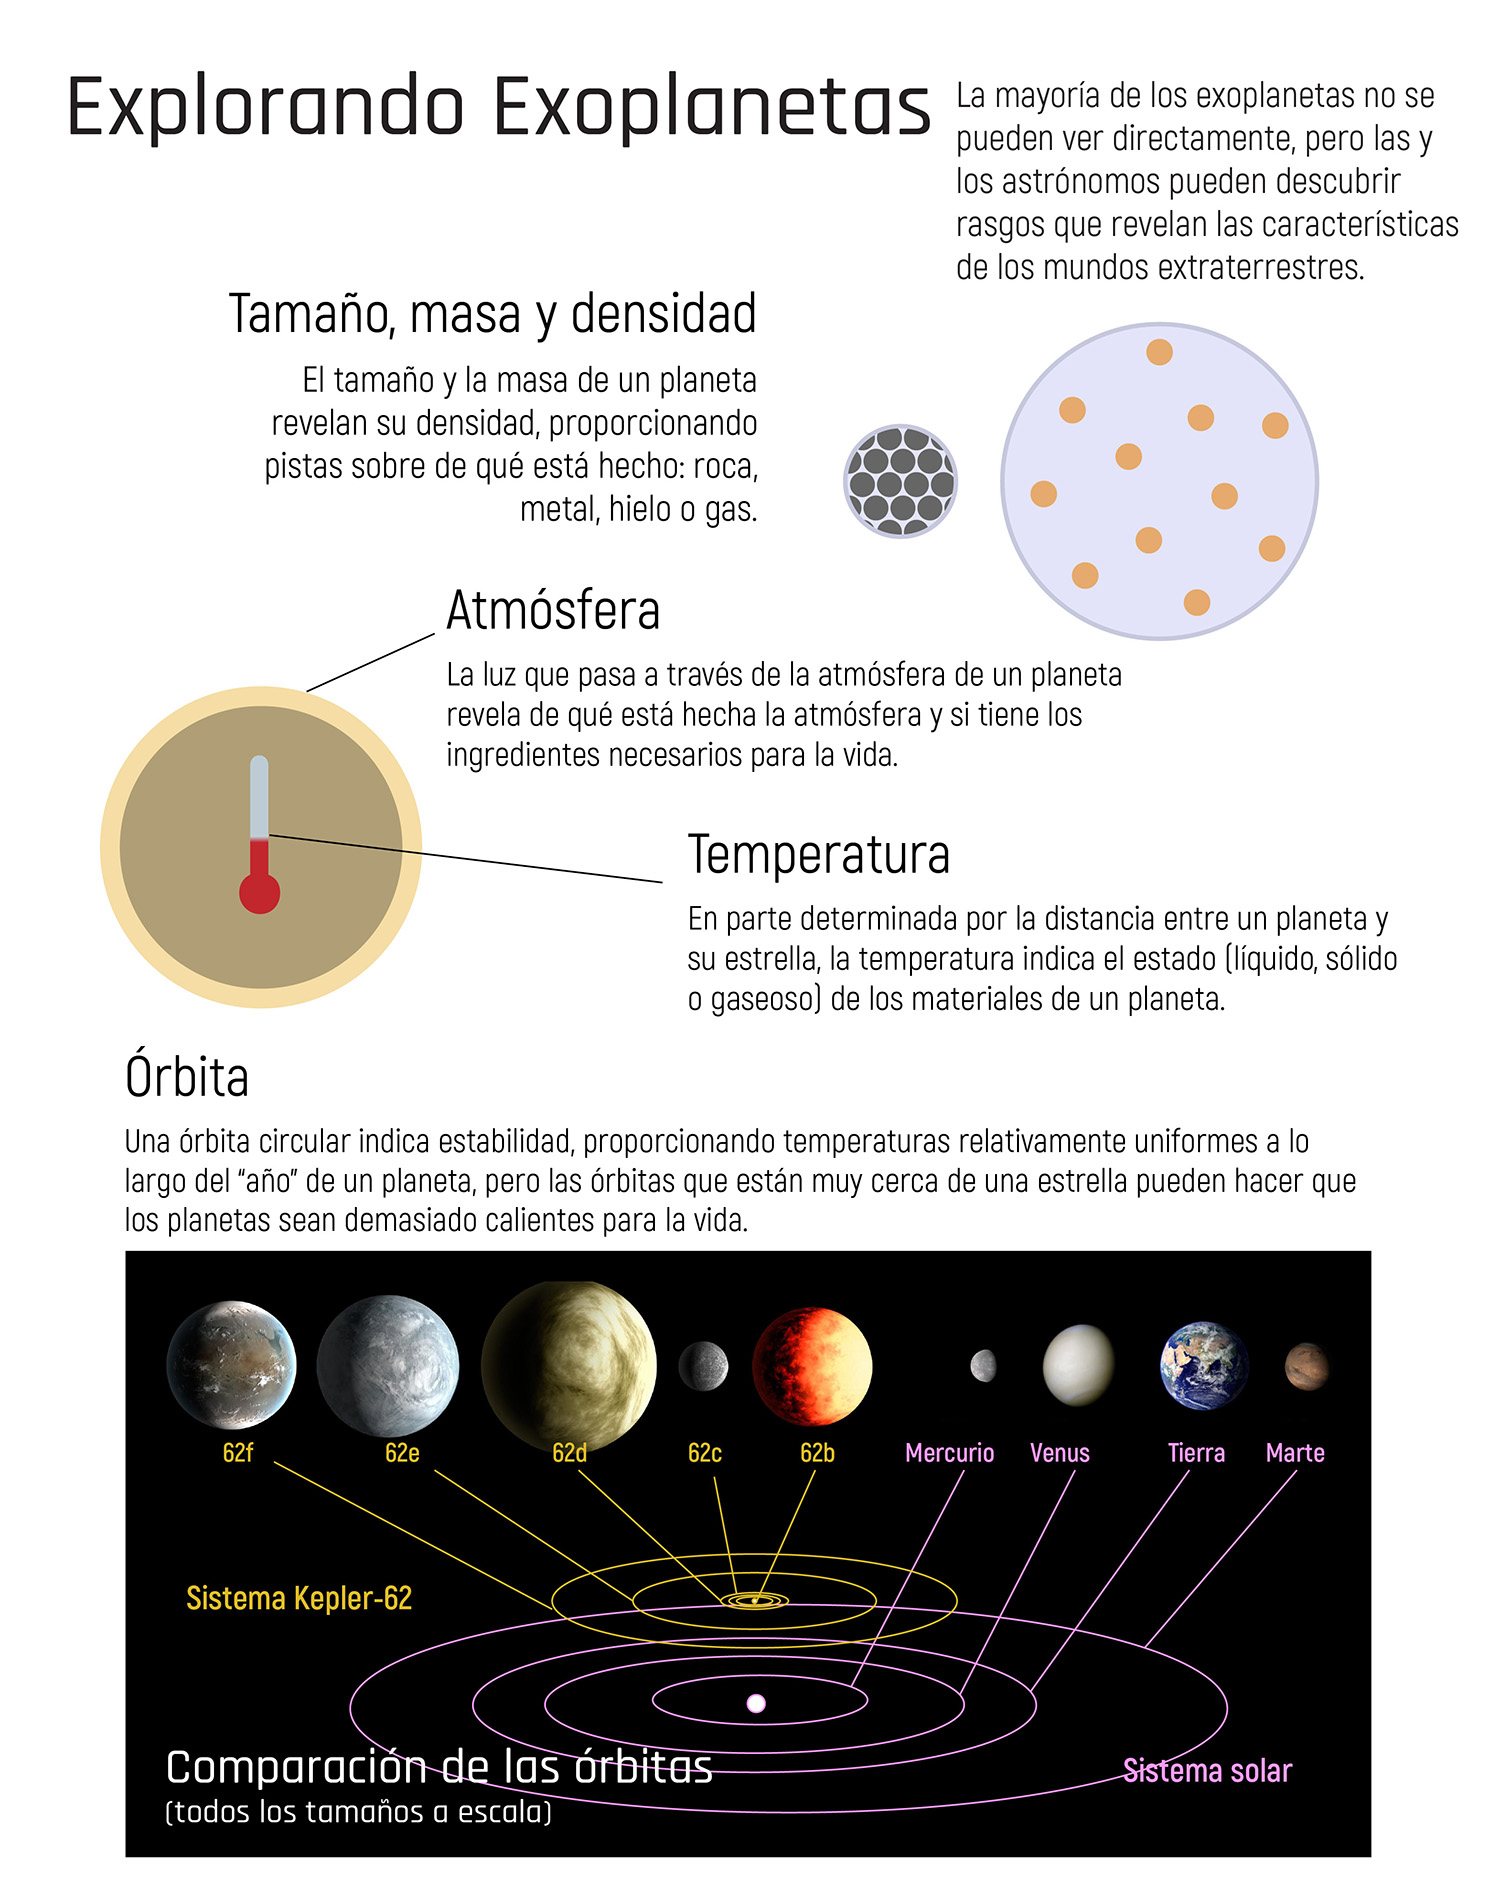 Infográfico que detalla las diferentes características como tamaño, masa y densidad, la atmósfera, temperatura y órbita que los astrónomos pueden estudiar de un exoplaneta.